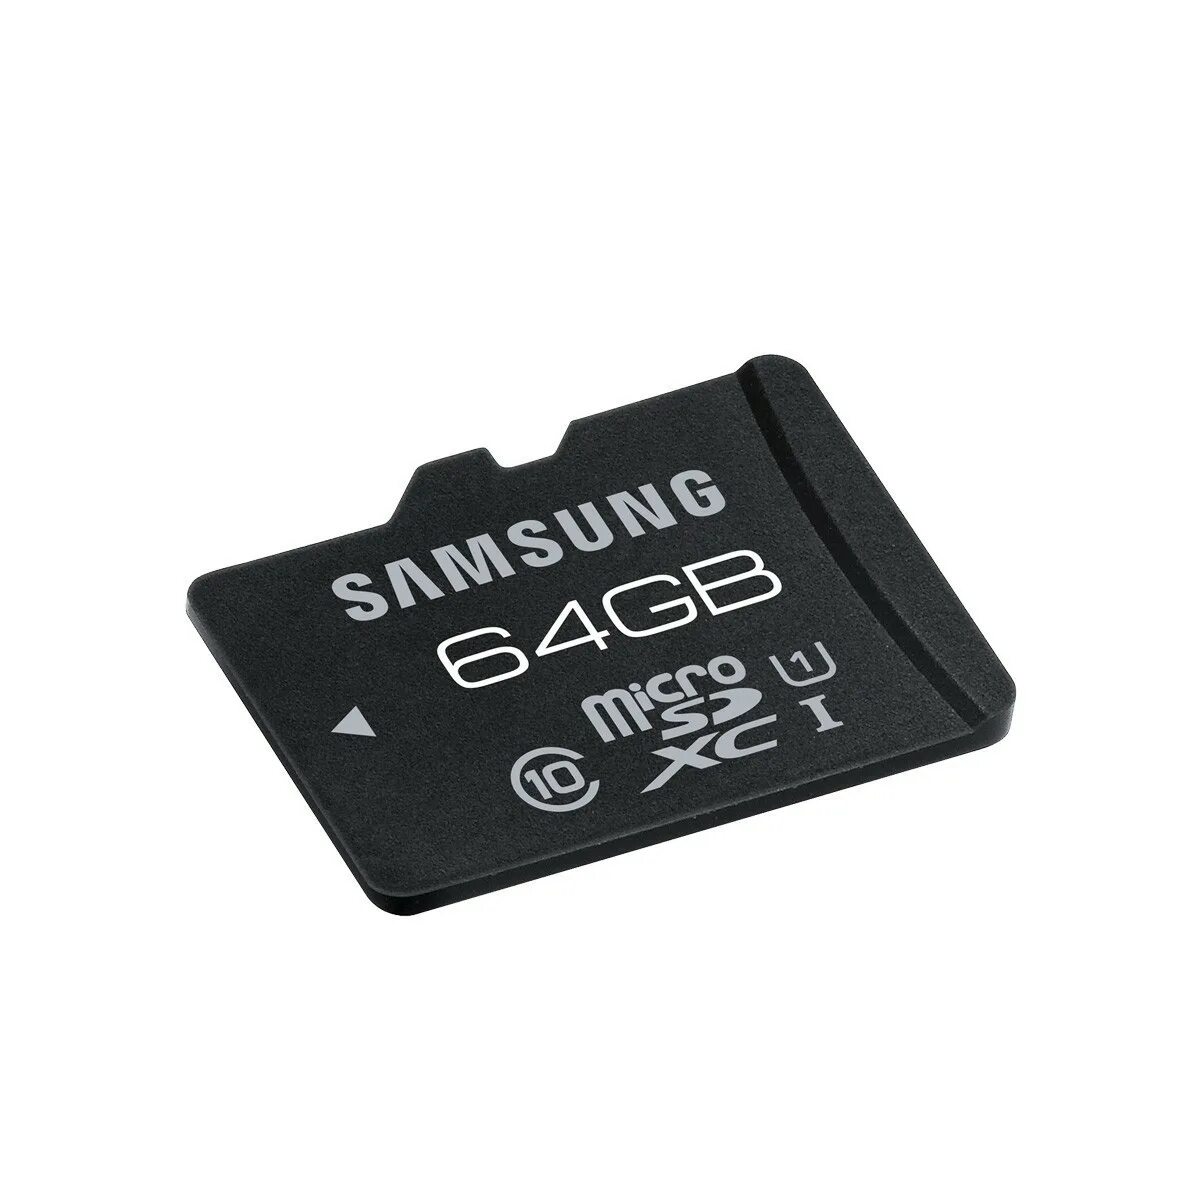 Микро СД самсунг 32u. 32гб карта памяти Samsung MICROSD. Флешка микро СД 64. Флешка 64 ГБ микро SD.